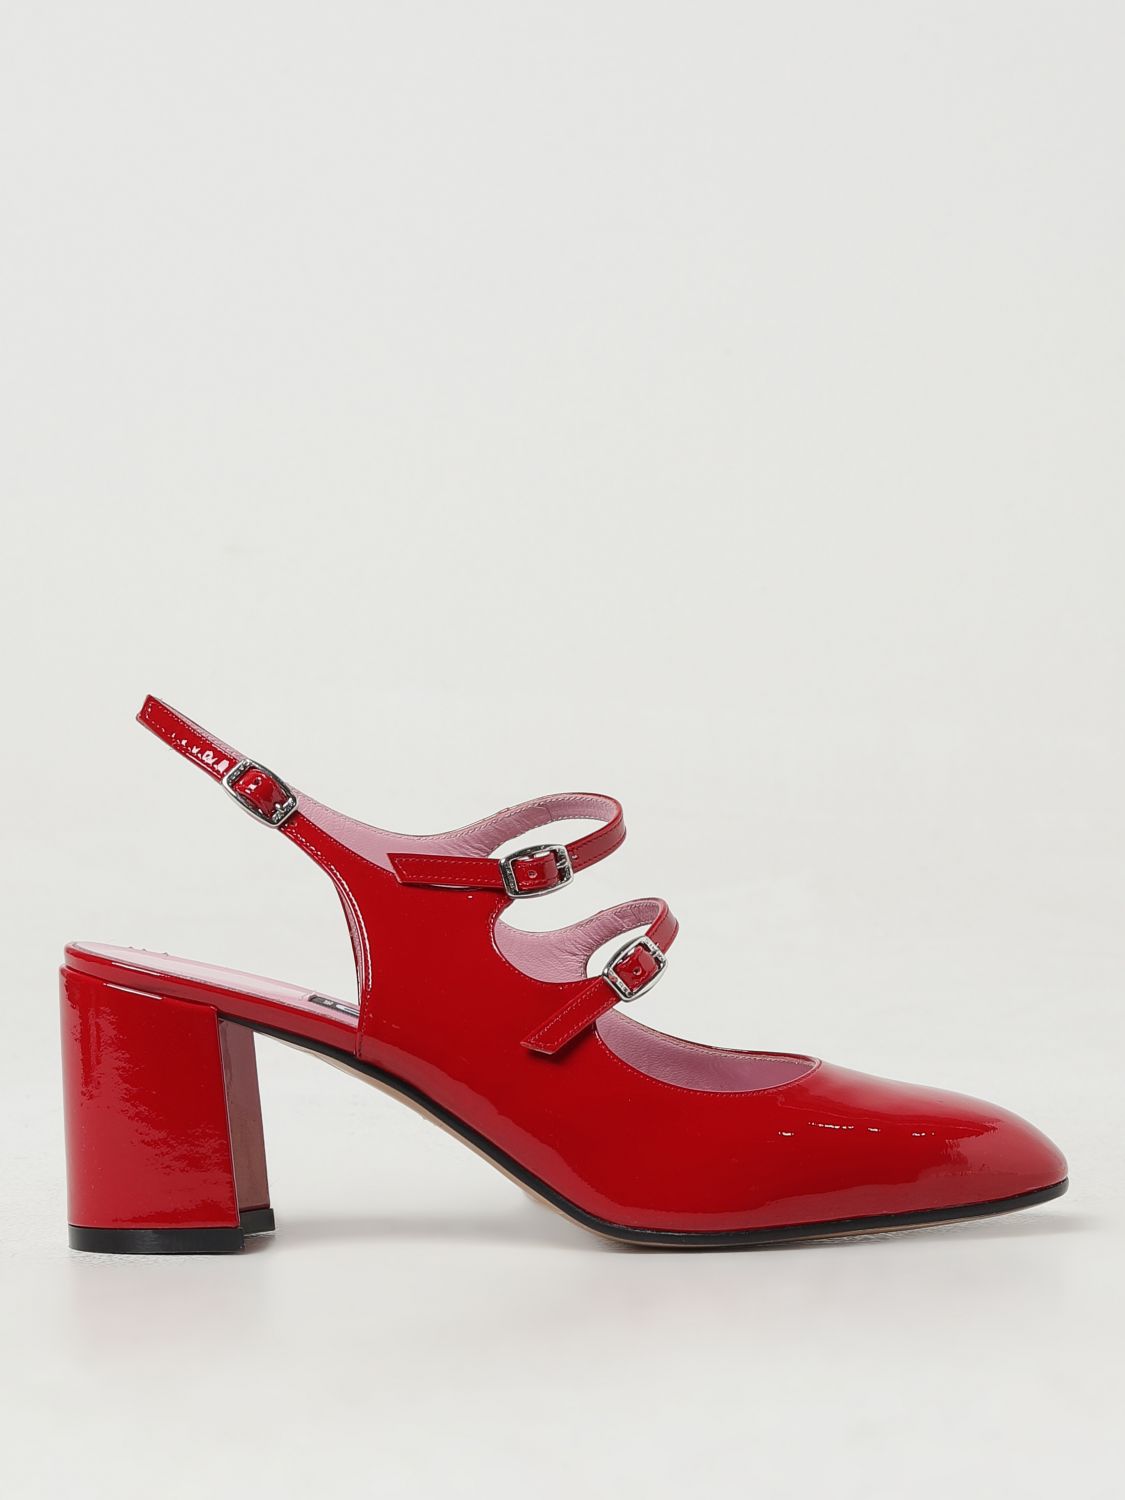 Carel Paris Shoes  Woman Colour Red